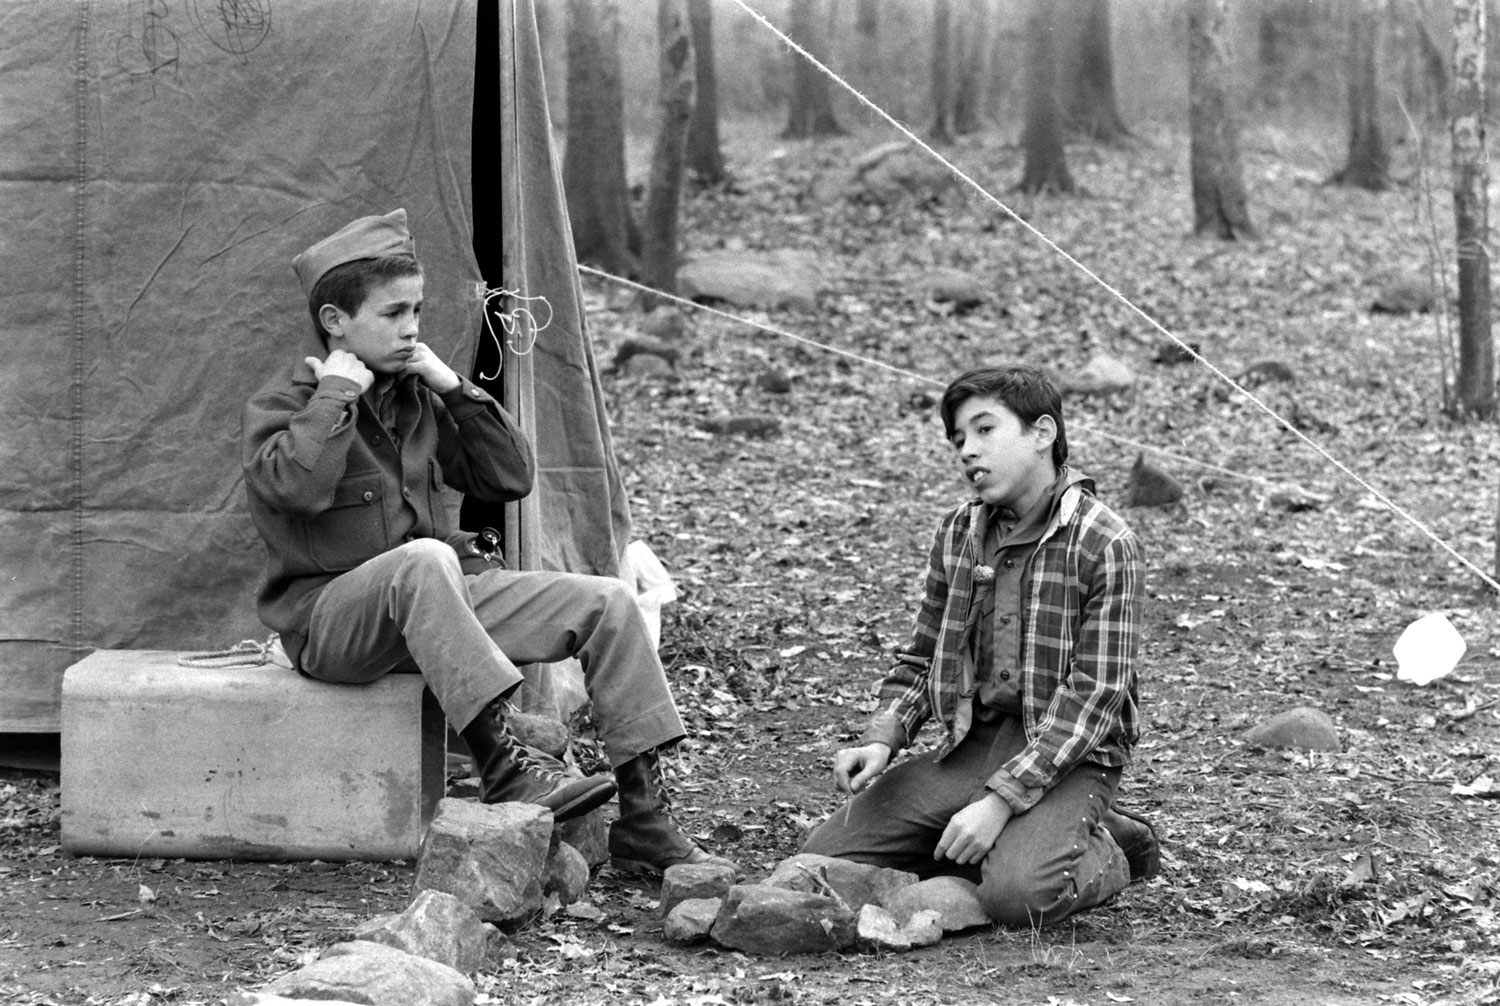 New York Boy Scouts, 1971